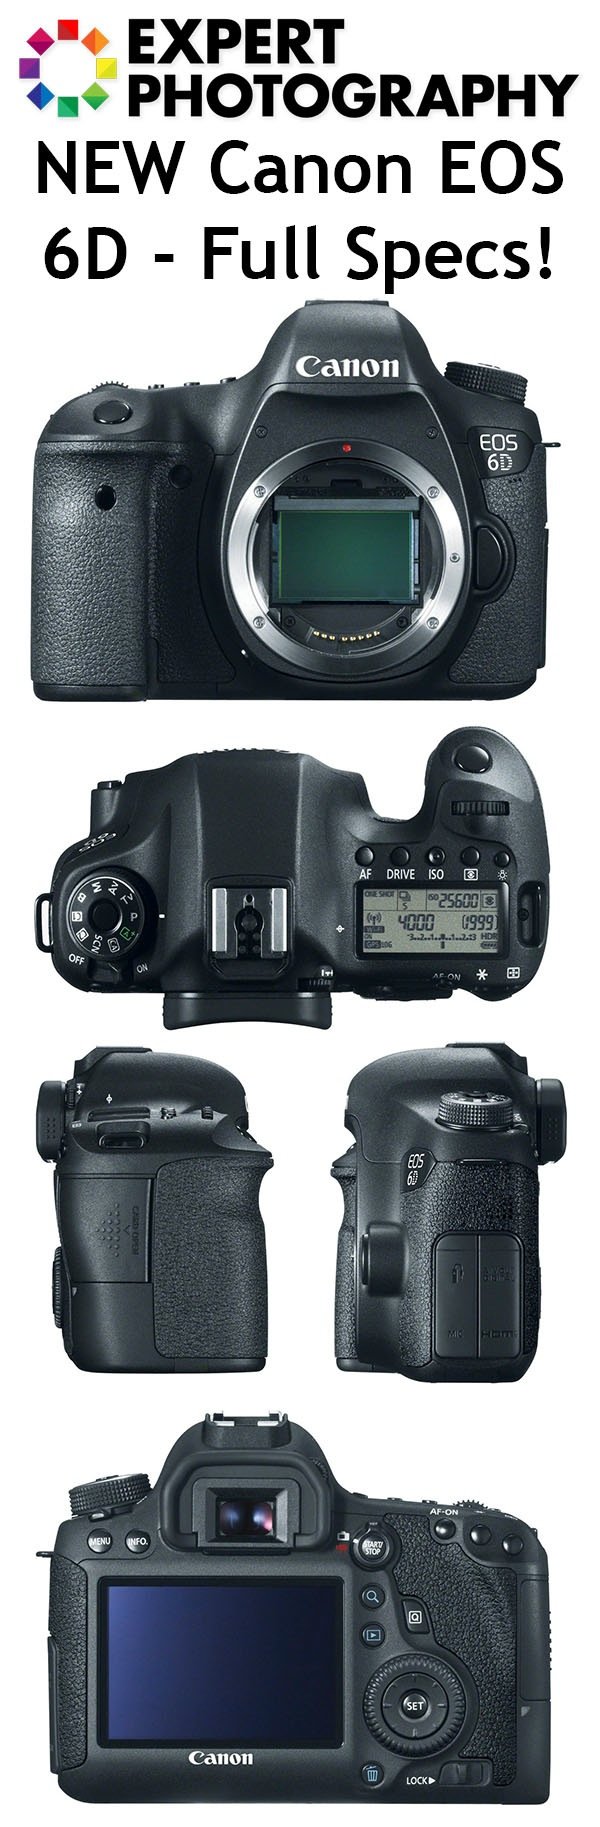 Коллаж камеры Canon EOS 6D, показанный со всех сторон